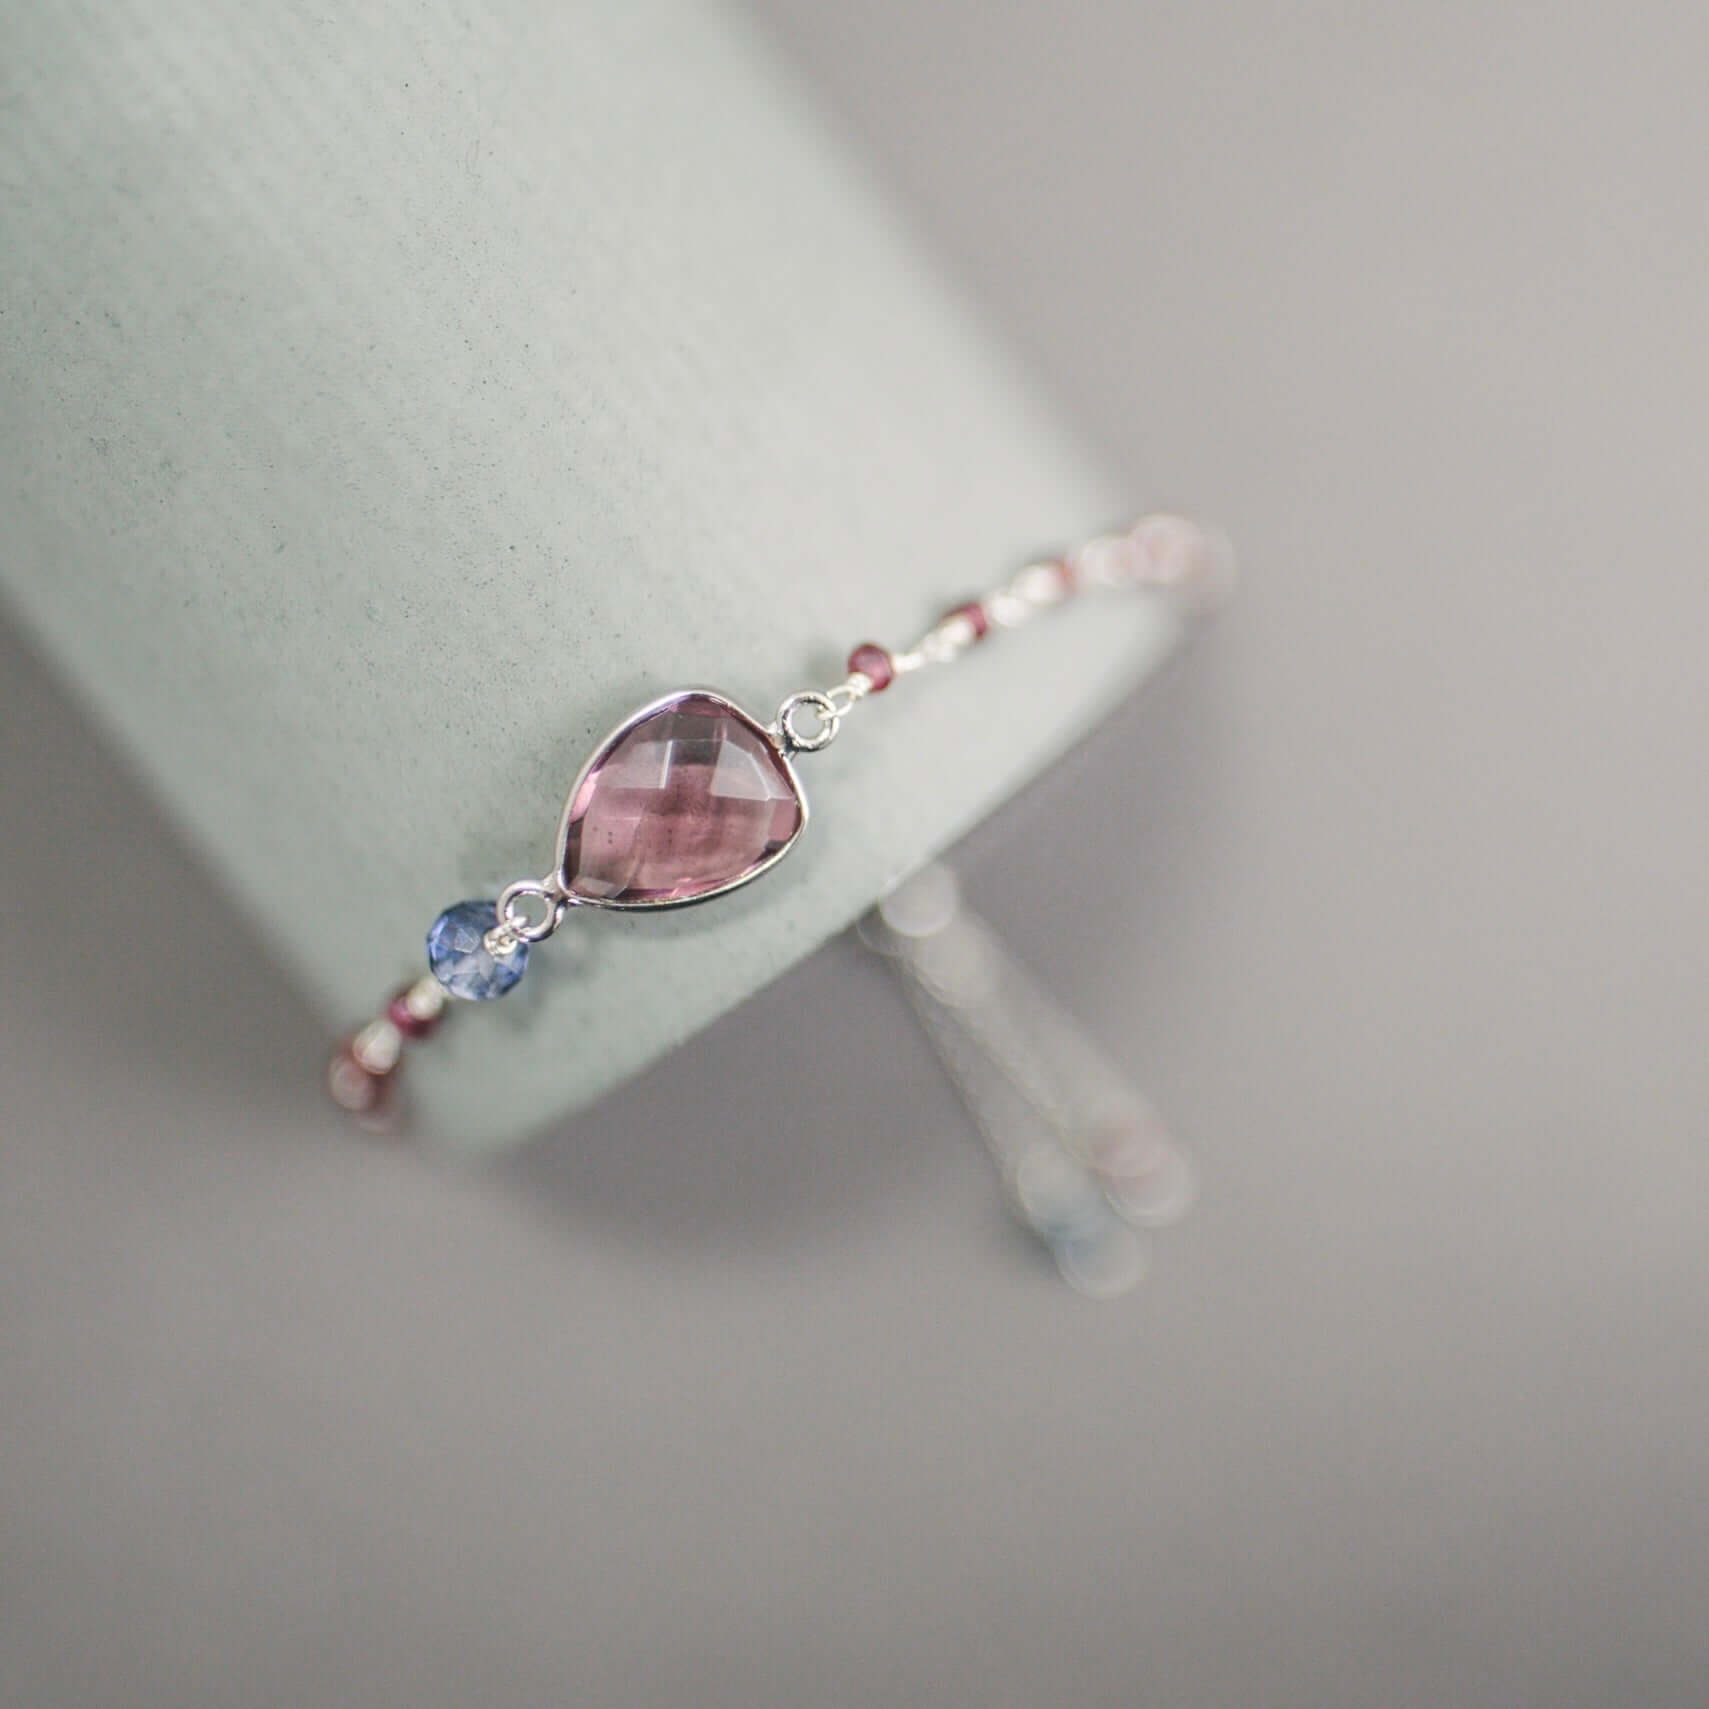 Adjustable Slider Bracelet  Authentic Pink tourmaline quartz bezel-set heart gemstone with rose quartz and opal quartz accent stones